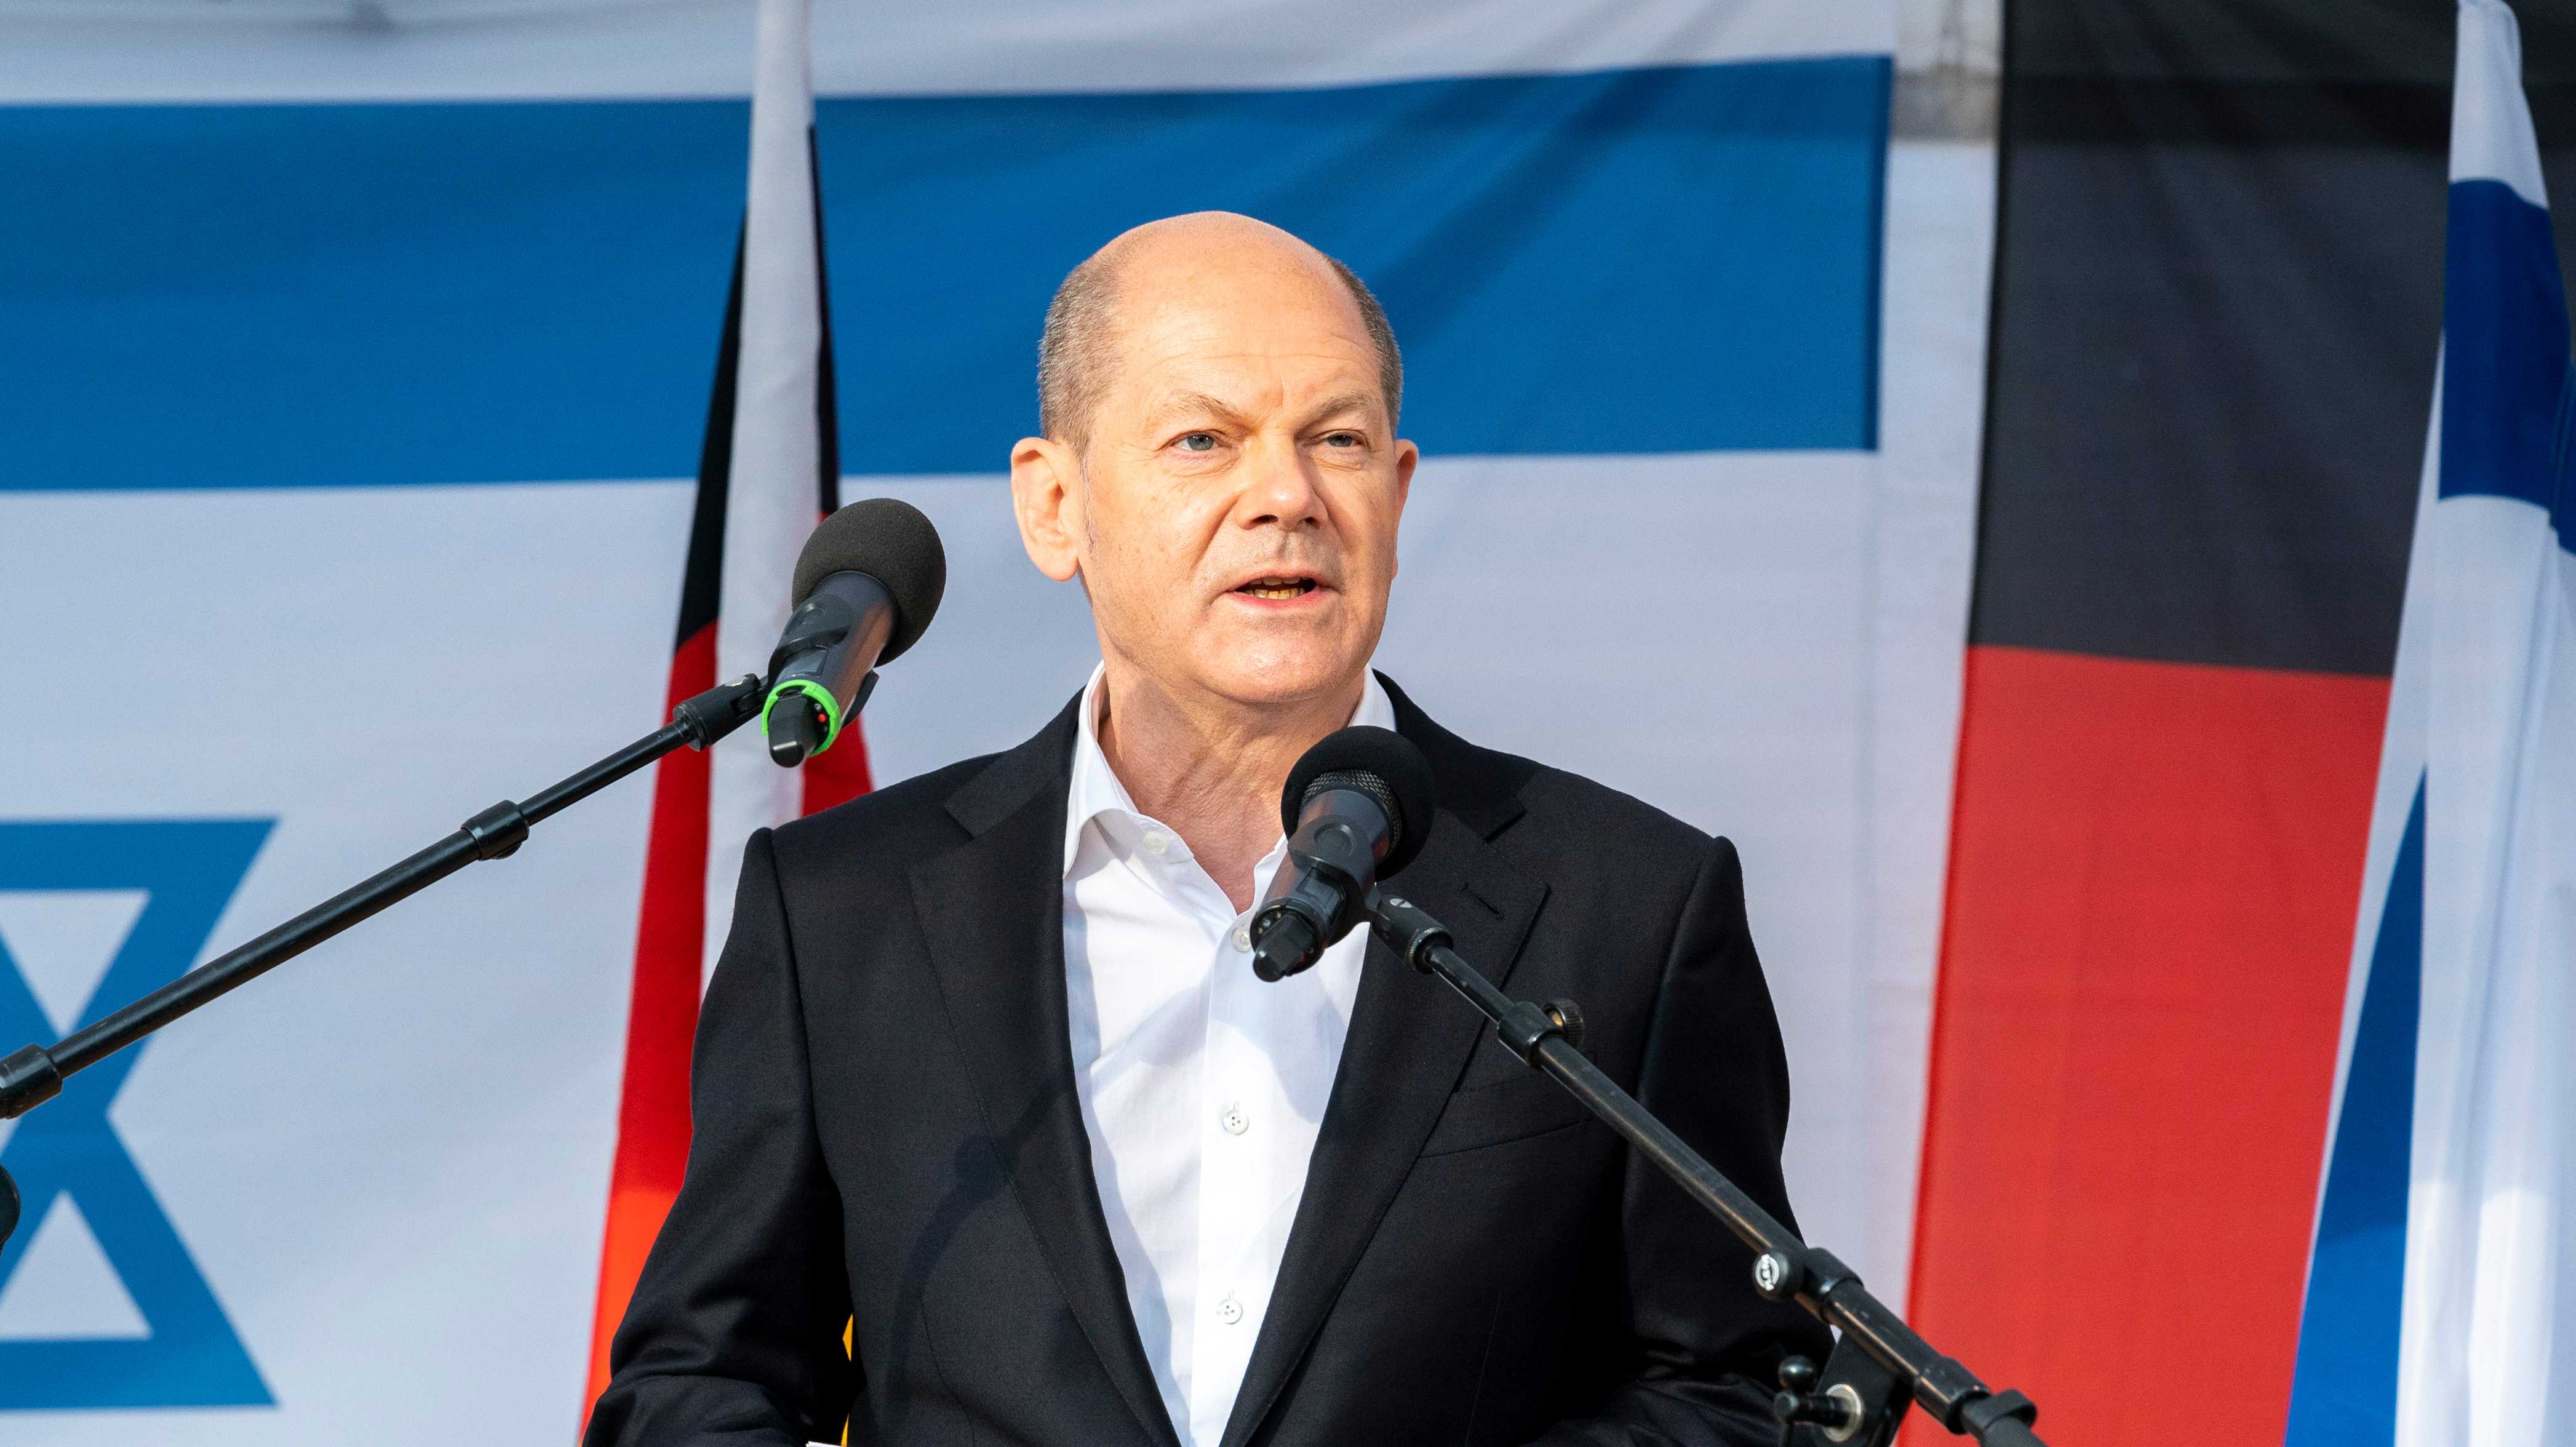 Bundeskanzler Olaf Scholz bei einer Solidaritätskundgebung für Israel und gegen Antisemitismus. 